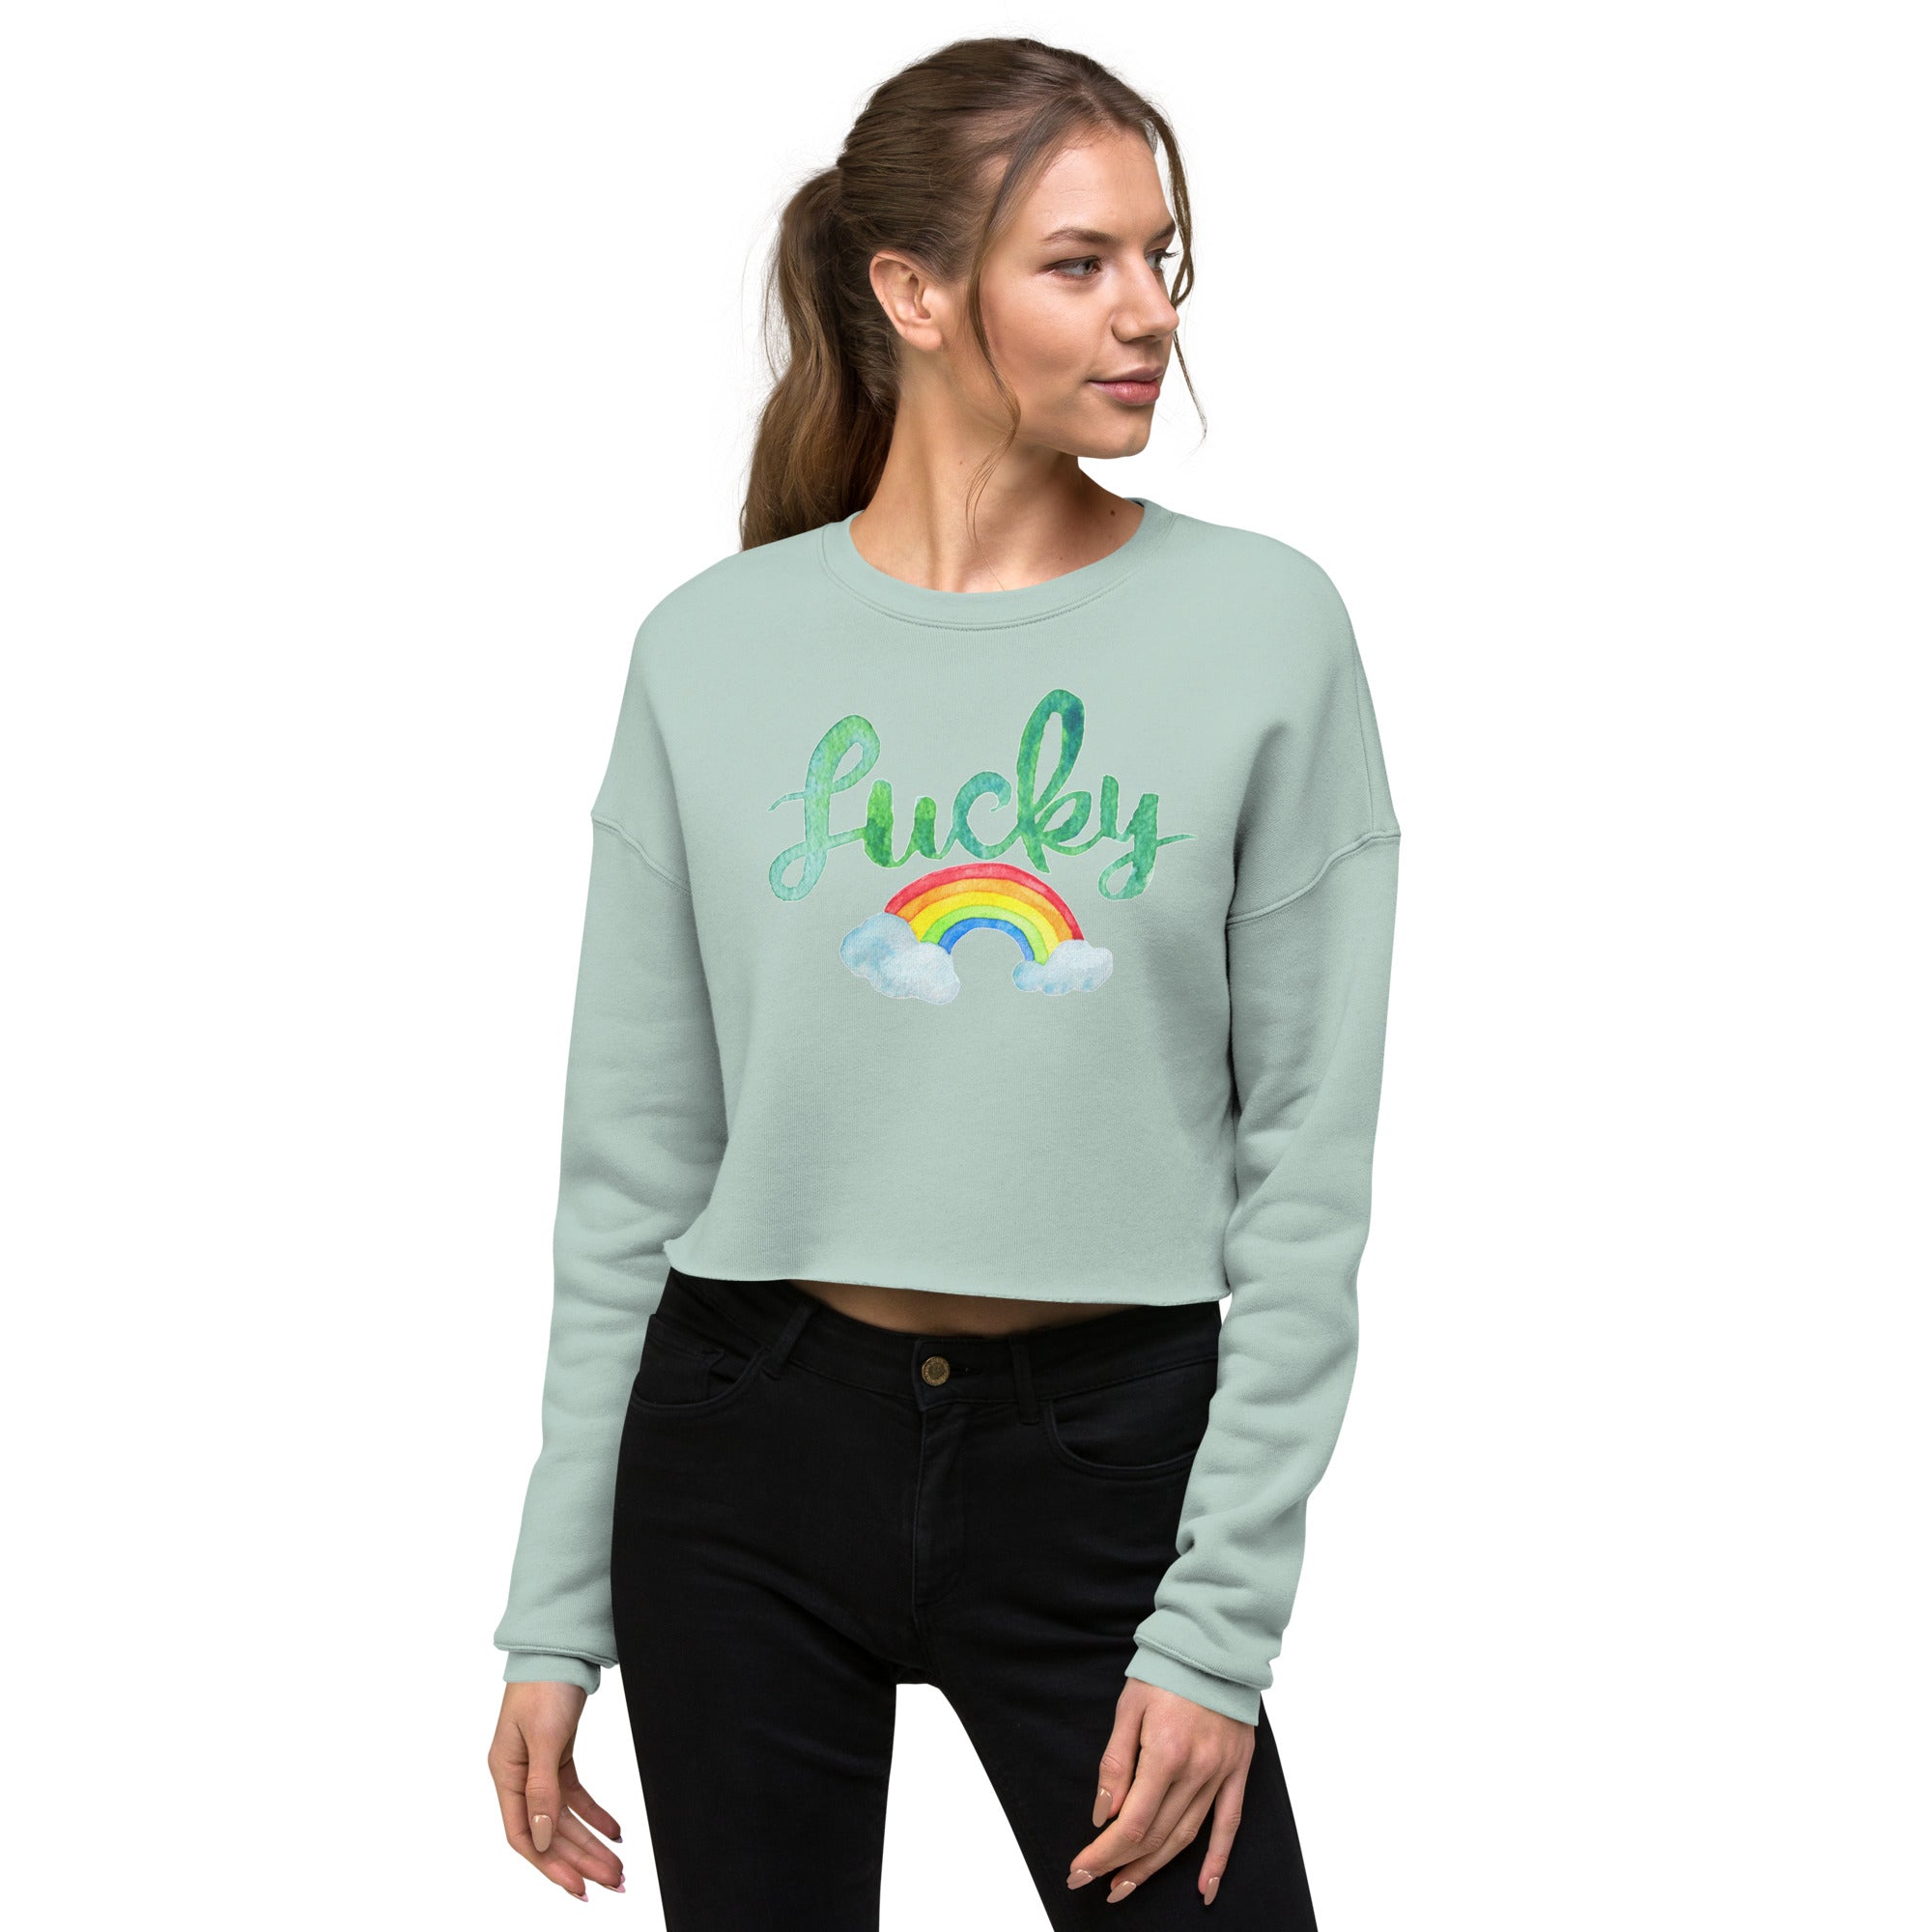 Lucky Crop Sweatshirt